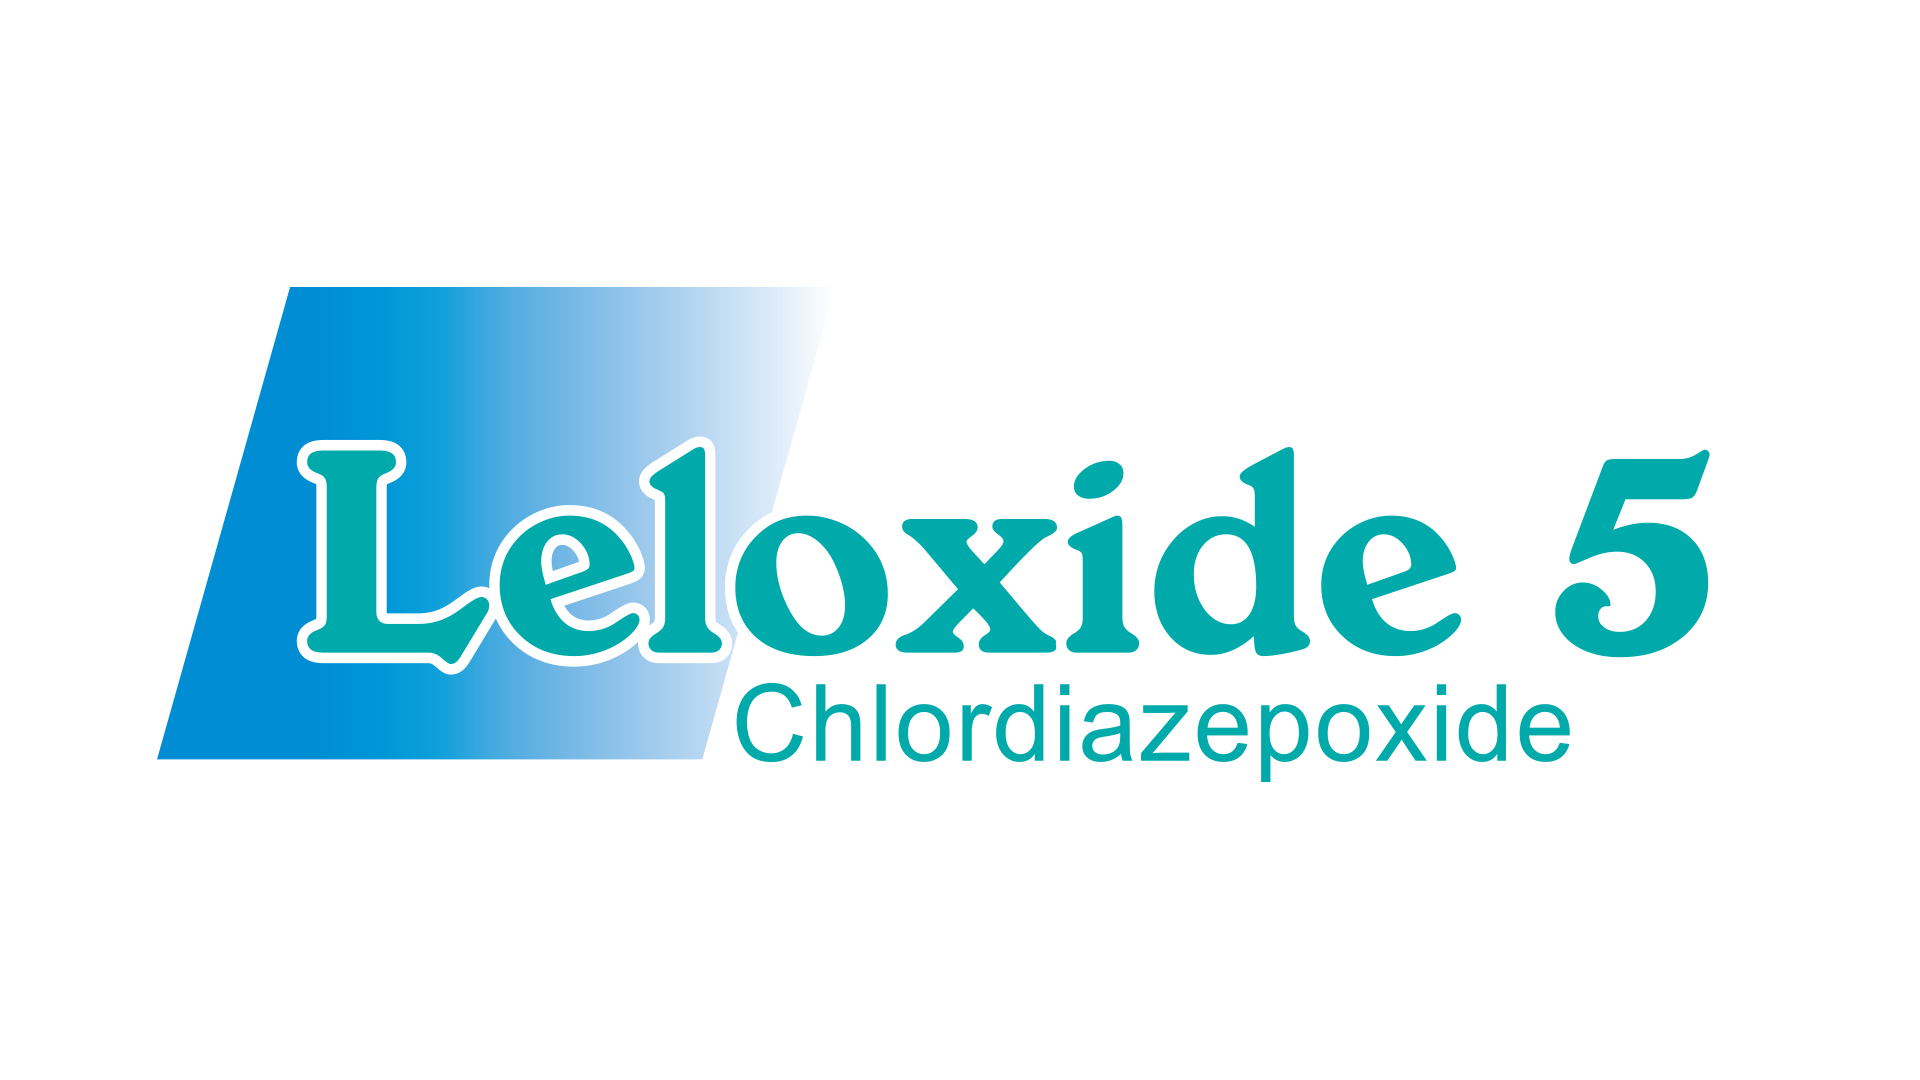 leloxide